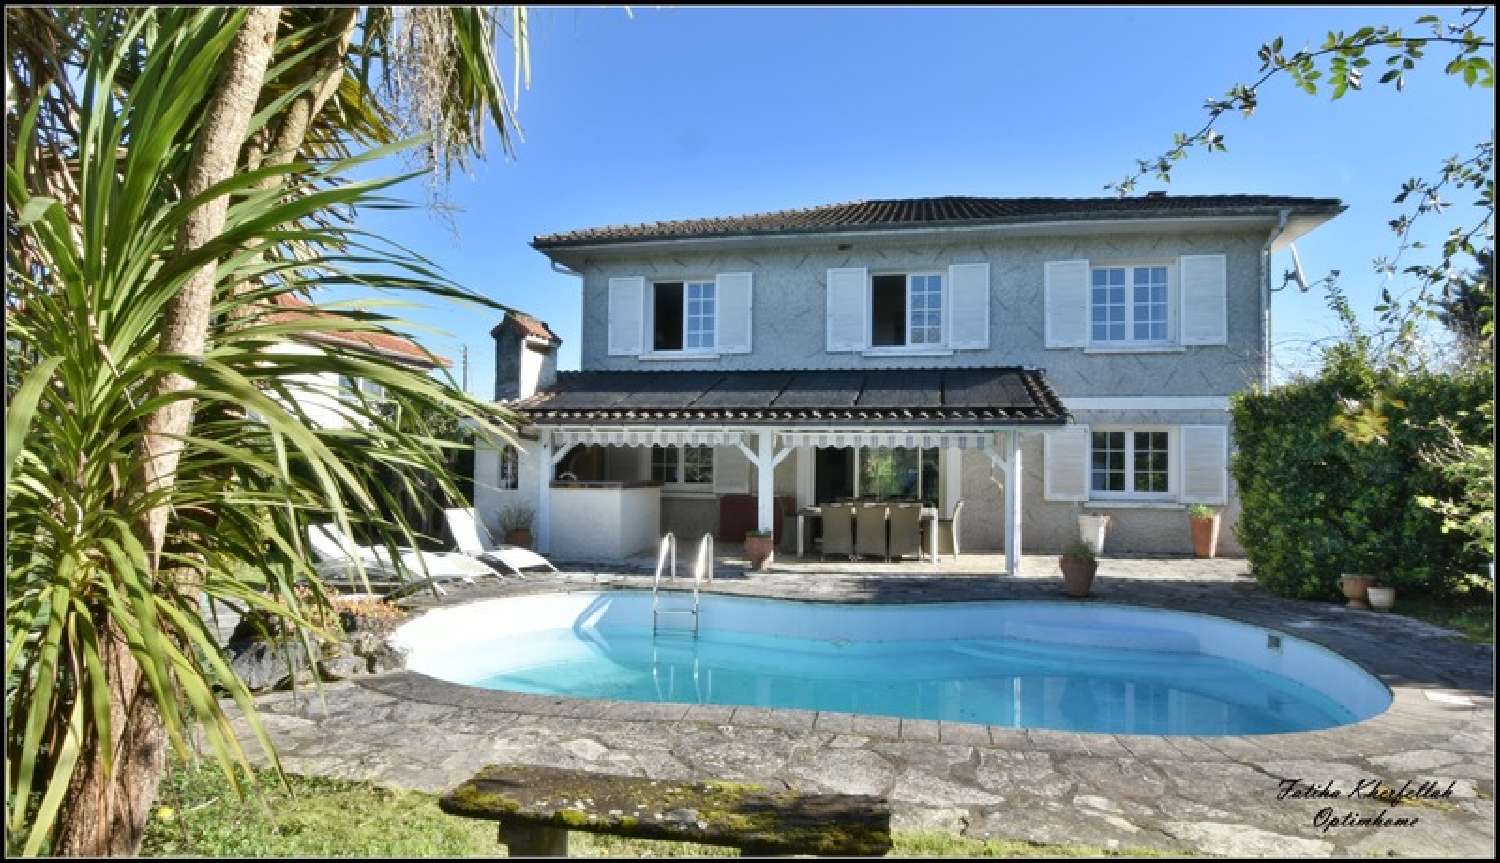  à vendre villa Mourenx Pyrénées-Atlantiques 1